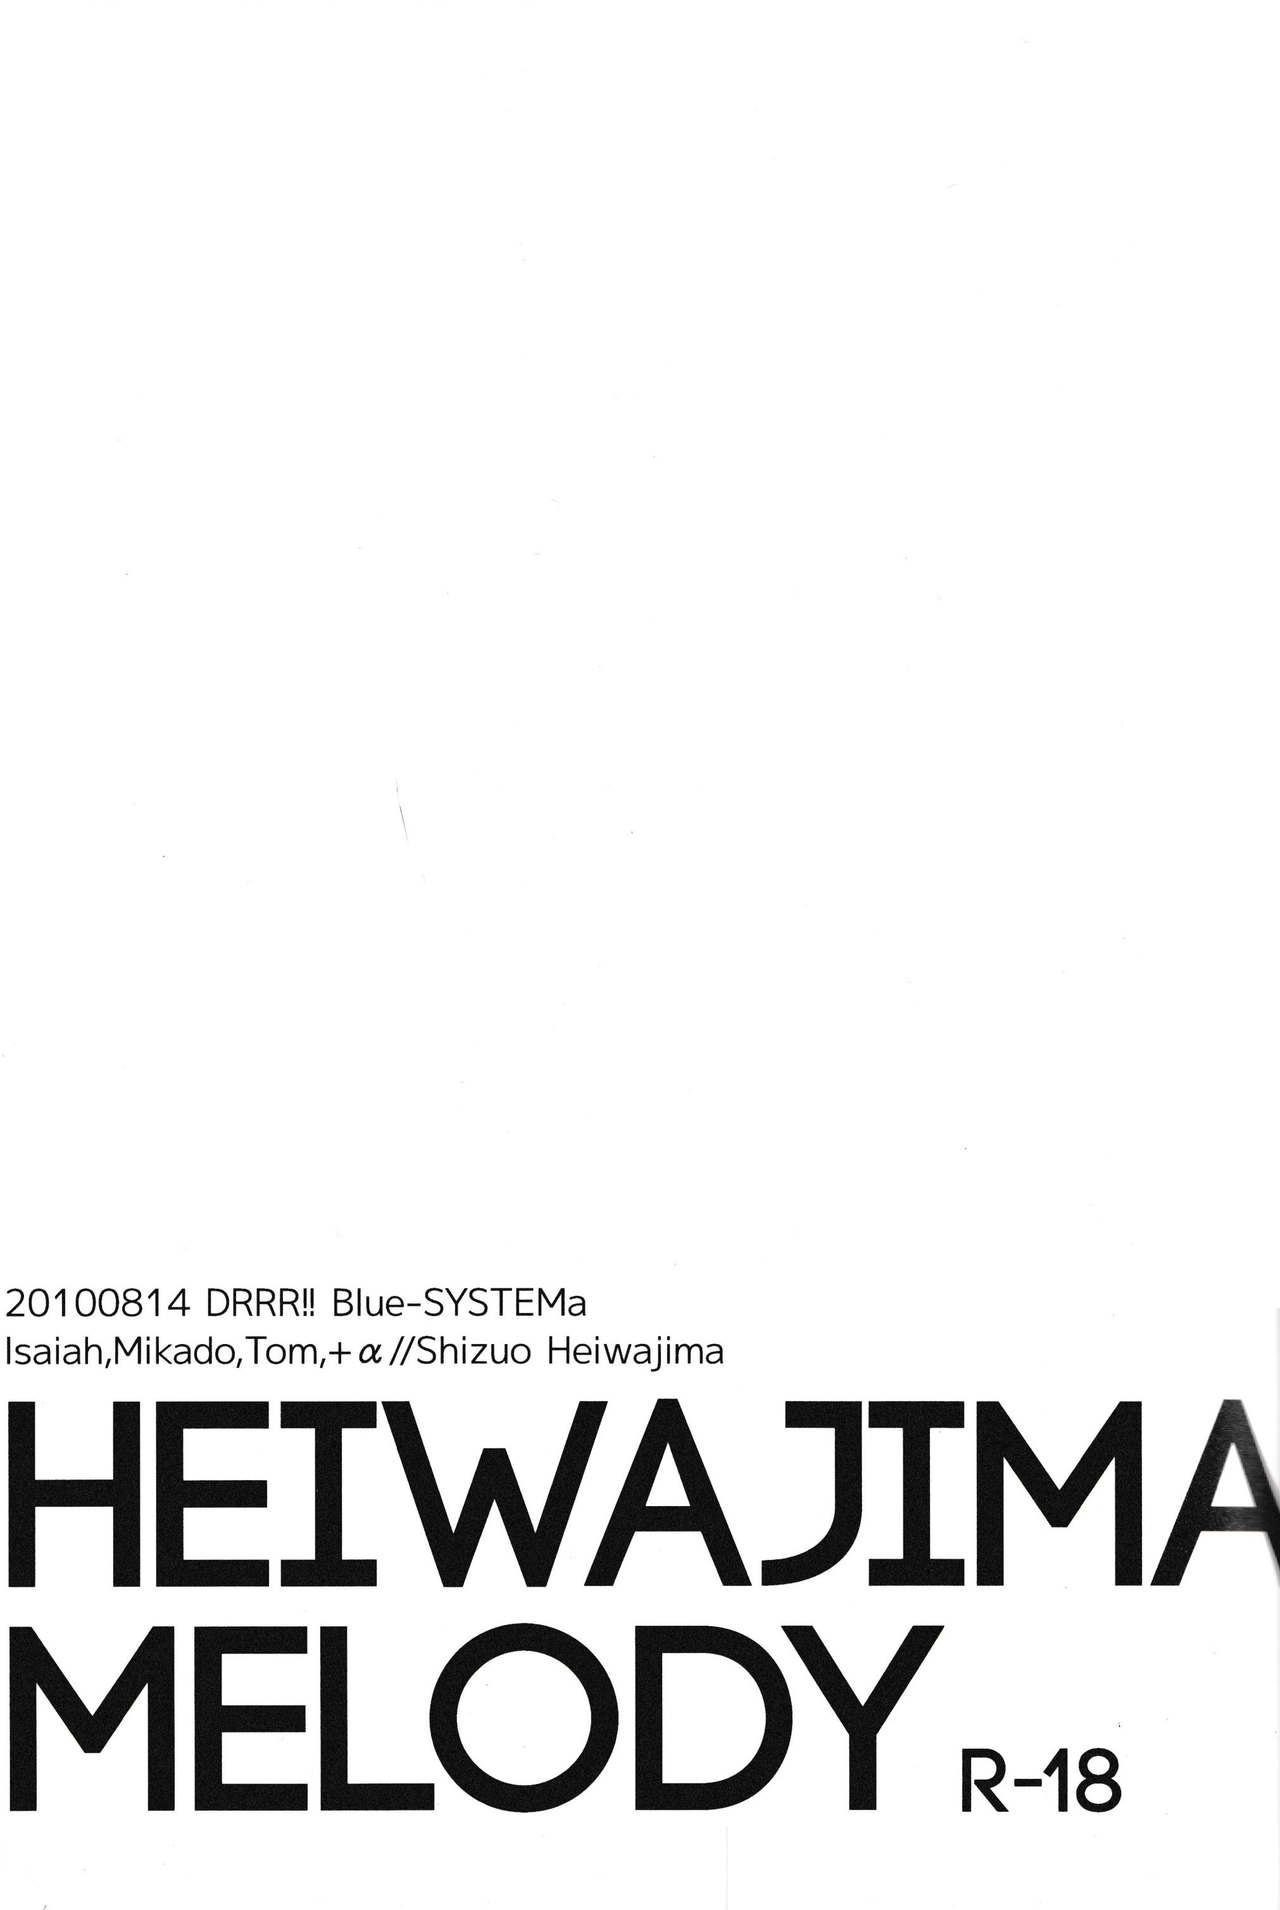 Heiwajima Melody 2